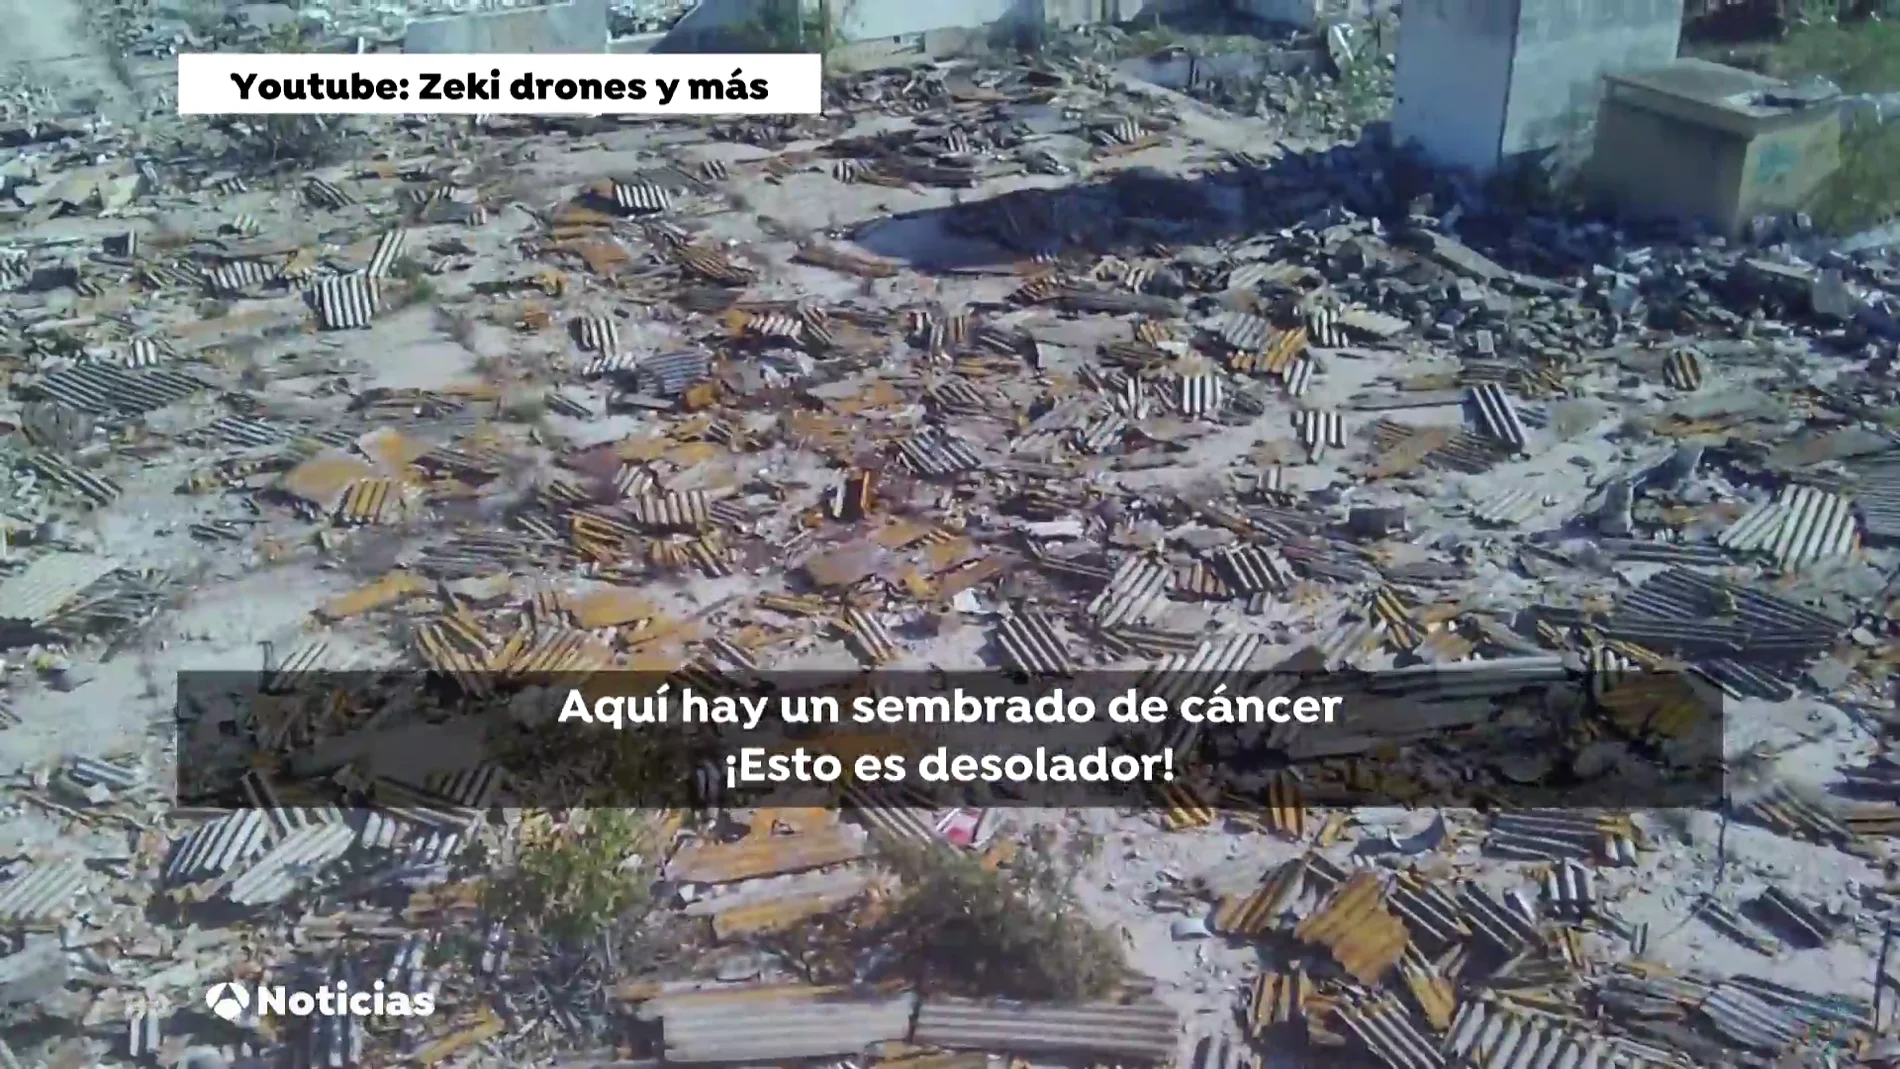 Vecinos de Alcalá de Guadaíra denuncian las toneladas de amianto: "Es desolador, es el Chernobyl alcalaeño"